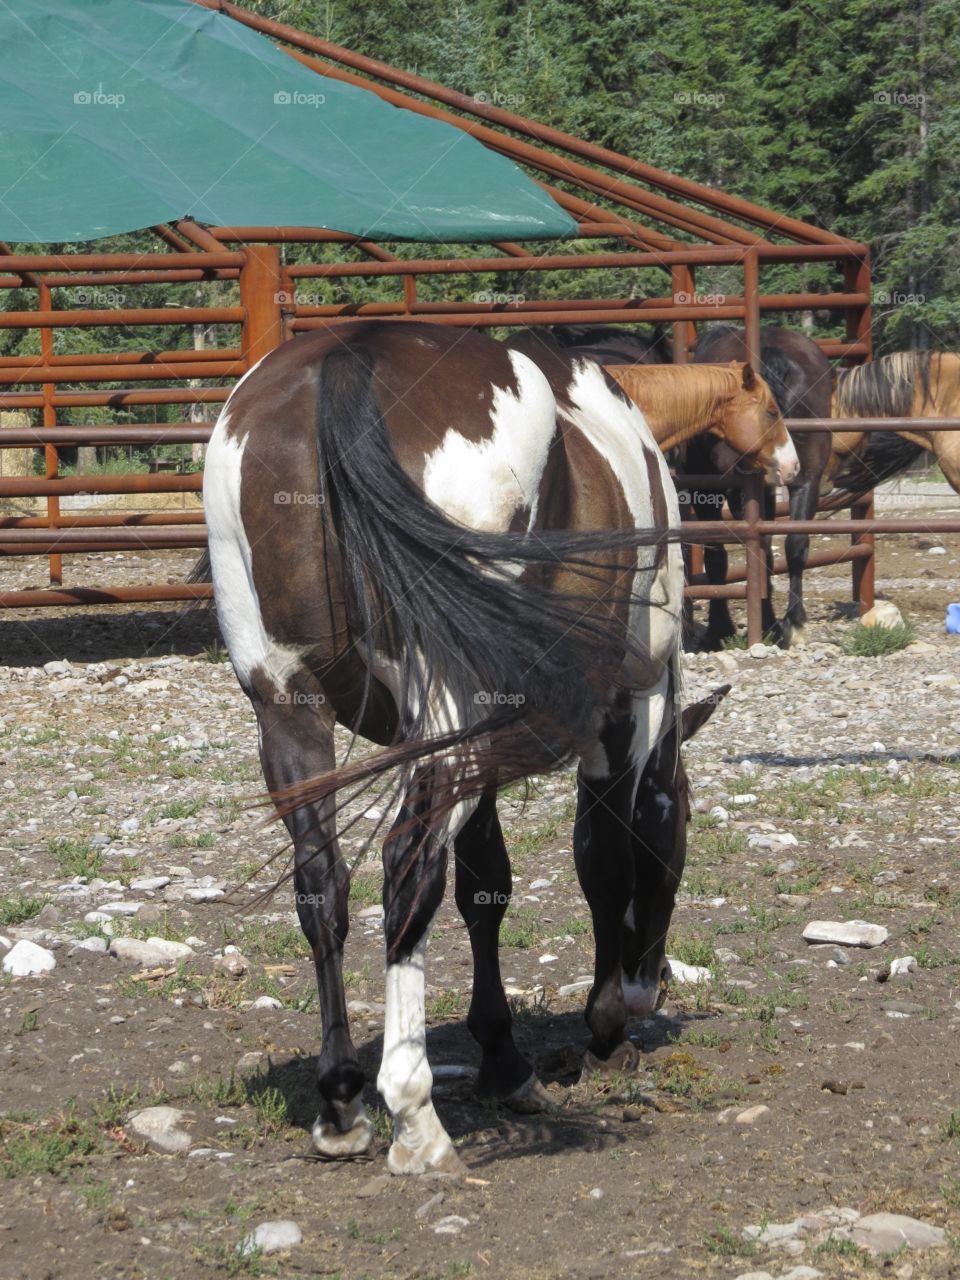 Horse butt